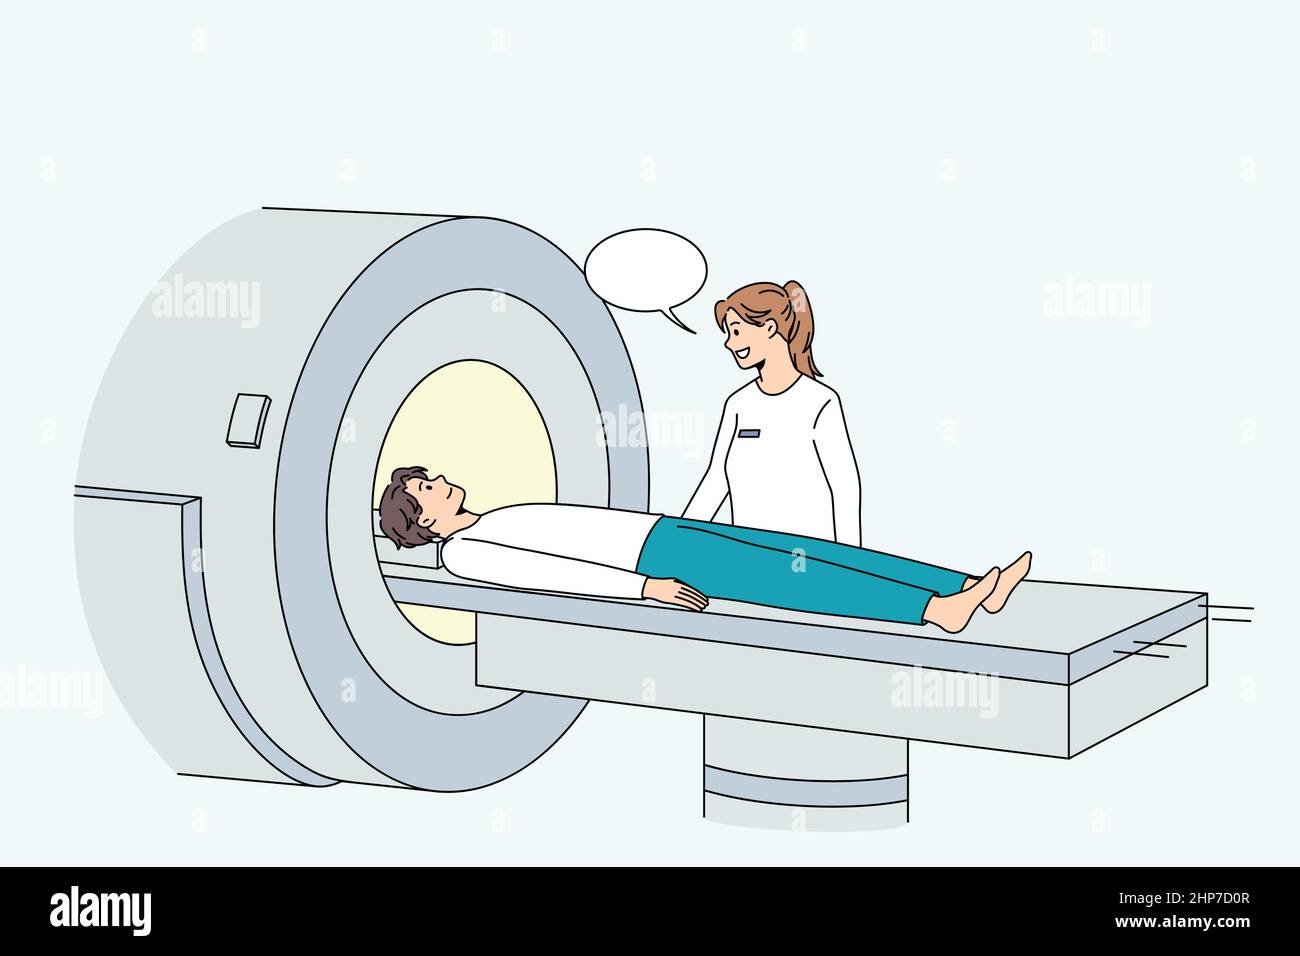 Der Mensch wird im modernen Krankenhaus einer Tomographie unterzogen Stock Vektor